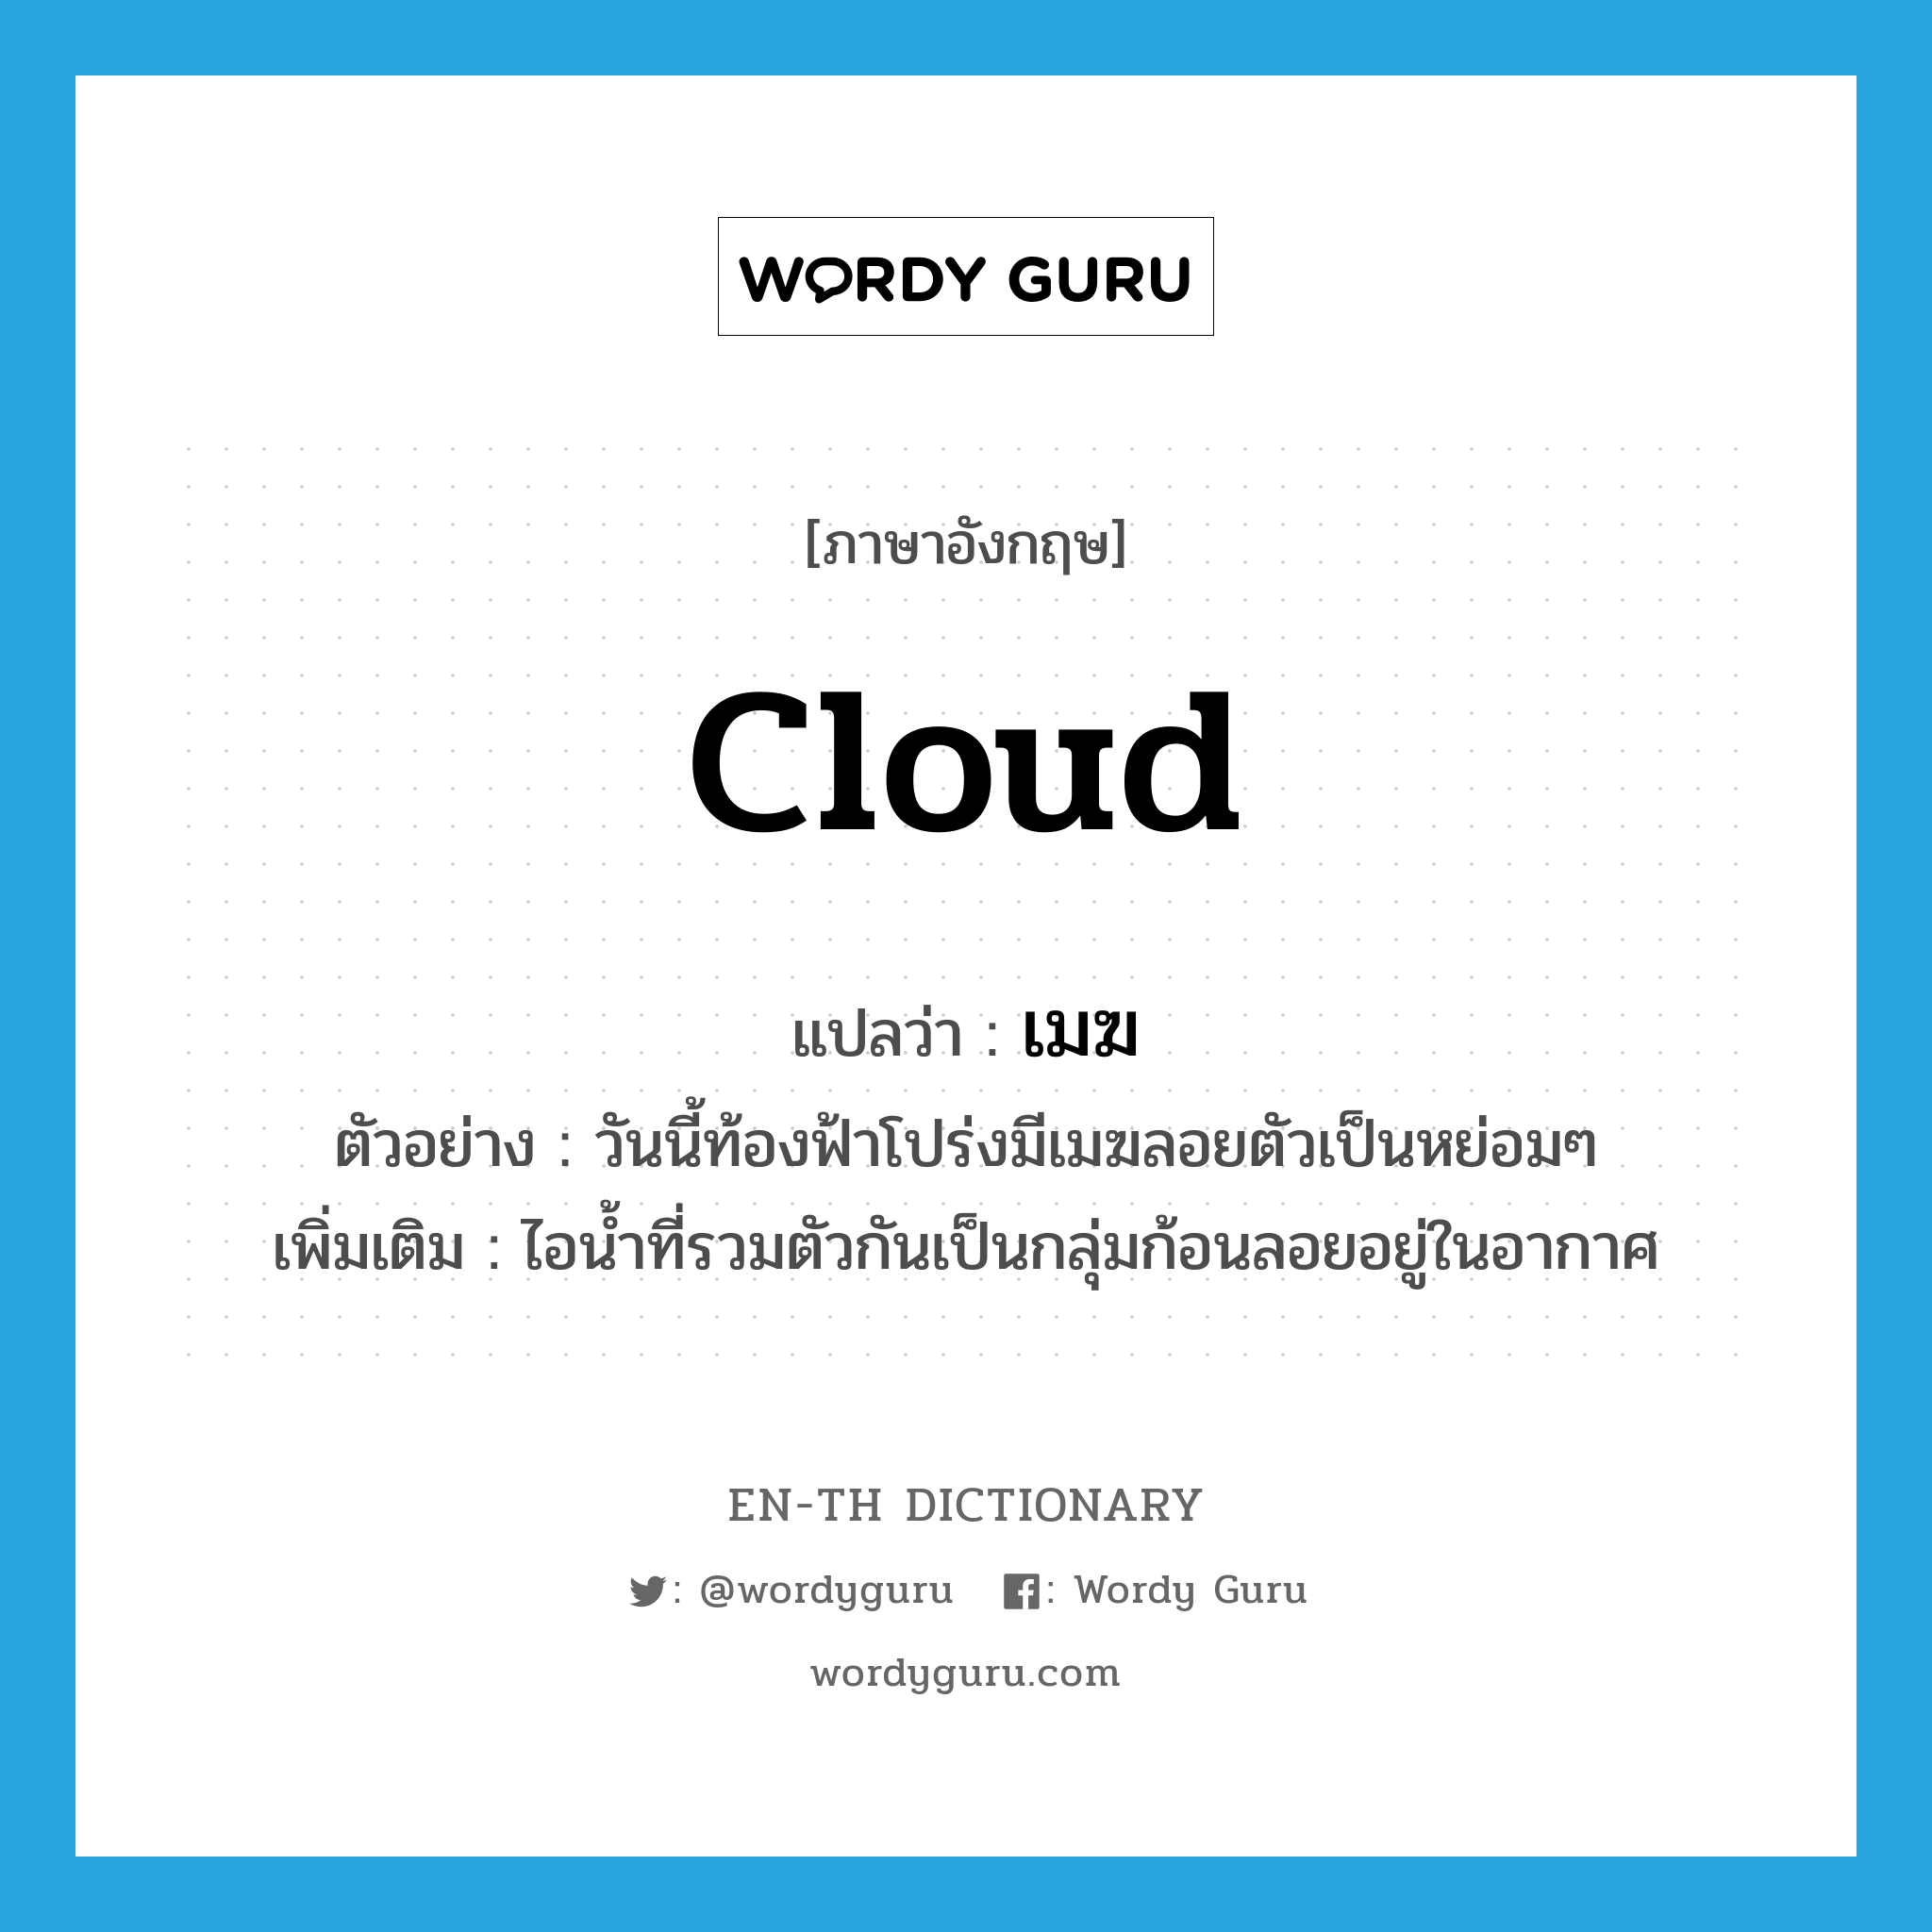 cloud แปลว่า?, คำศัพท์ภาษาอังกฤษ cloud แปลว่า เมฆ ประเภท N ตัวอย่าง วันนี้ท้องฟ้าโปร่งมีเมฆลอยตัวเป็นหย่อมๆ เพิ่มเติม ไอน้ำที่รวมตัวกันเป็นกลุ่มก้อนลอยอยู่ในอากาศ หมวด N